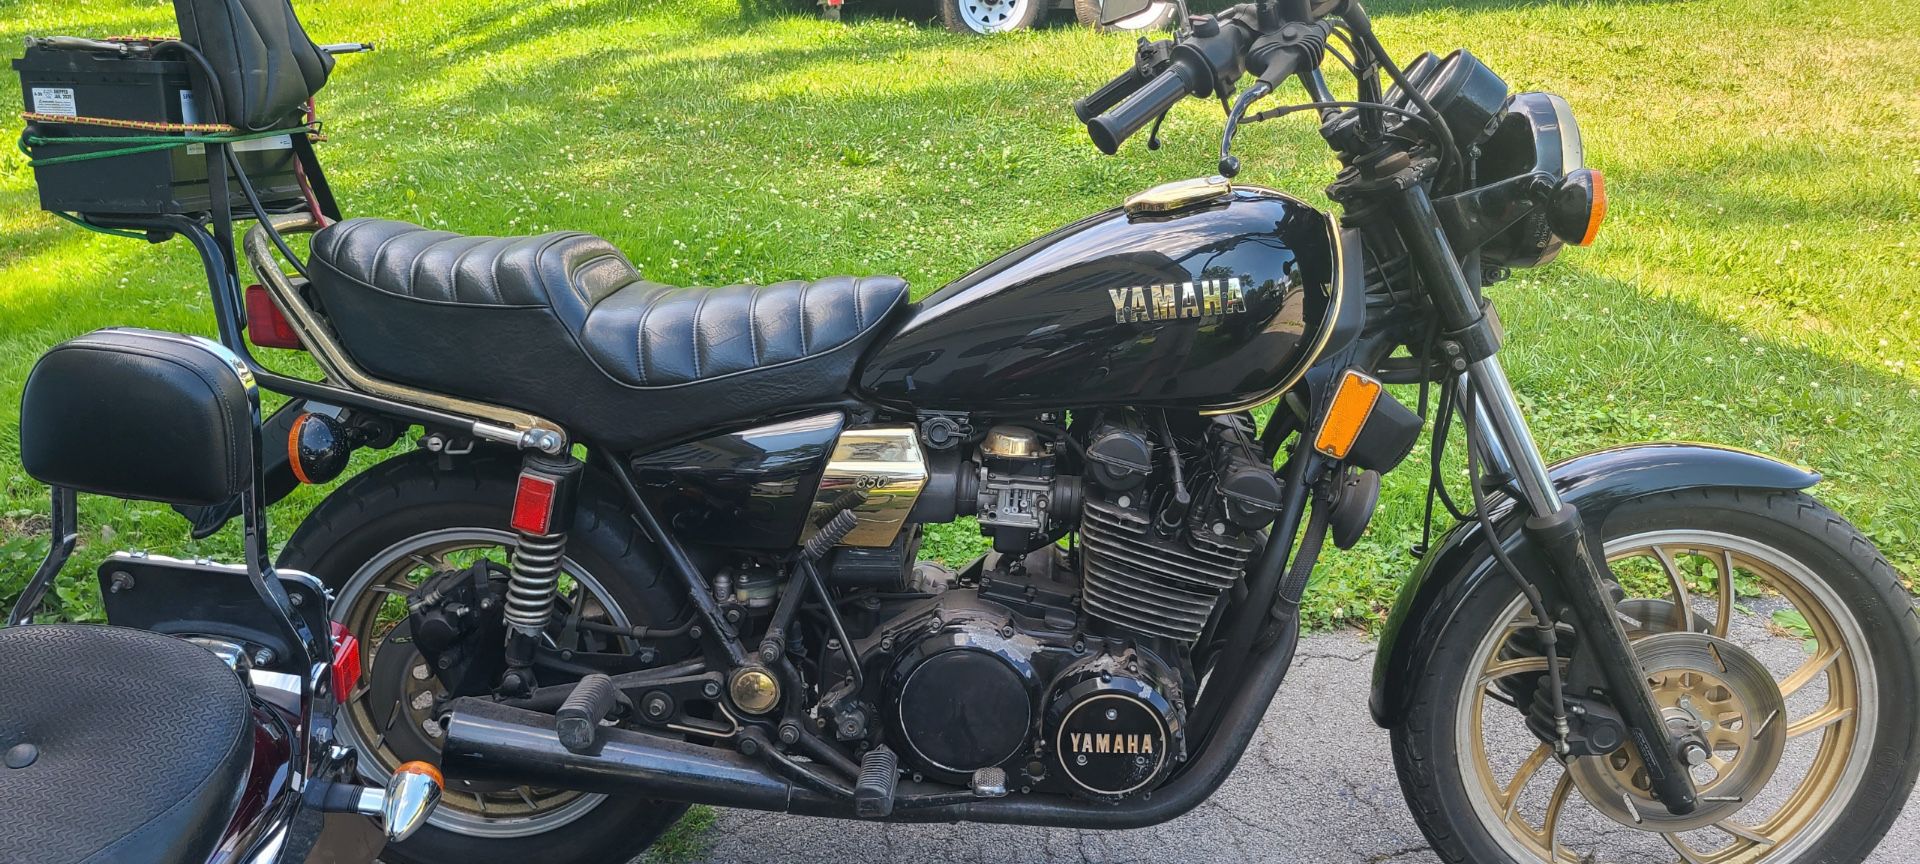 1980 Yamaha Xs850 special